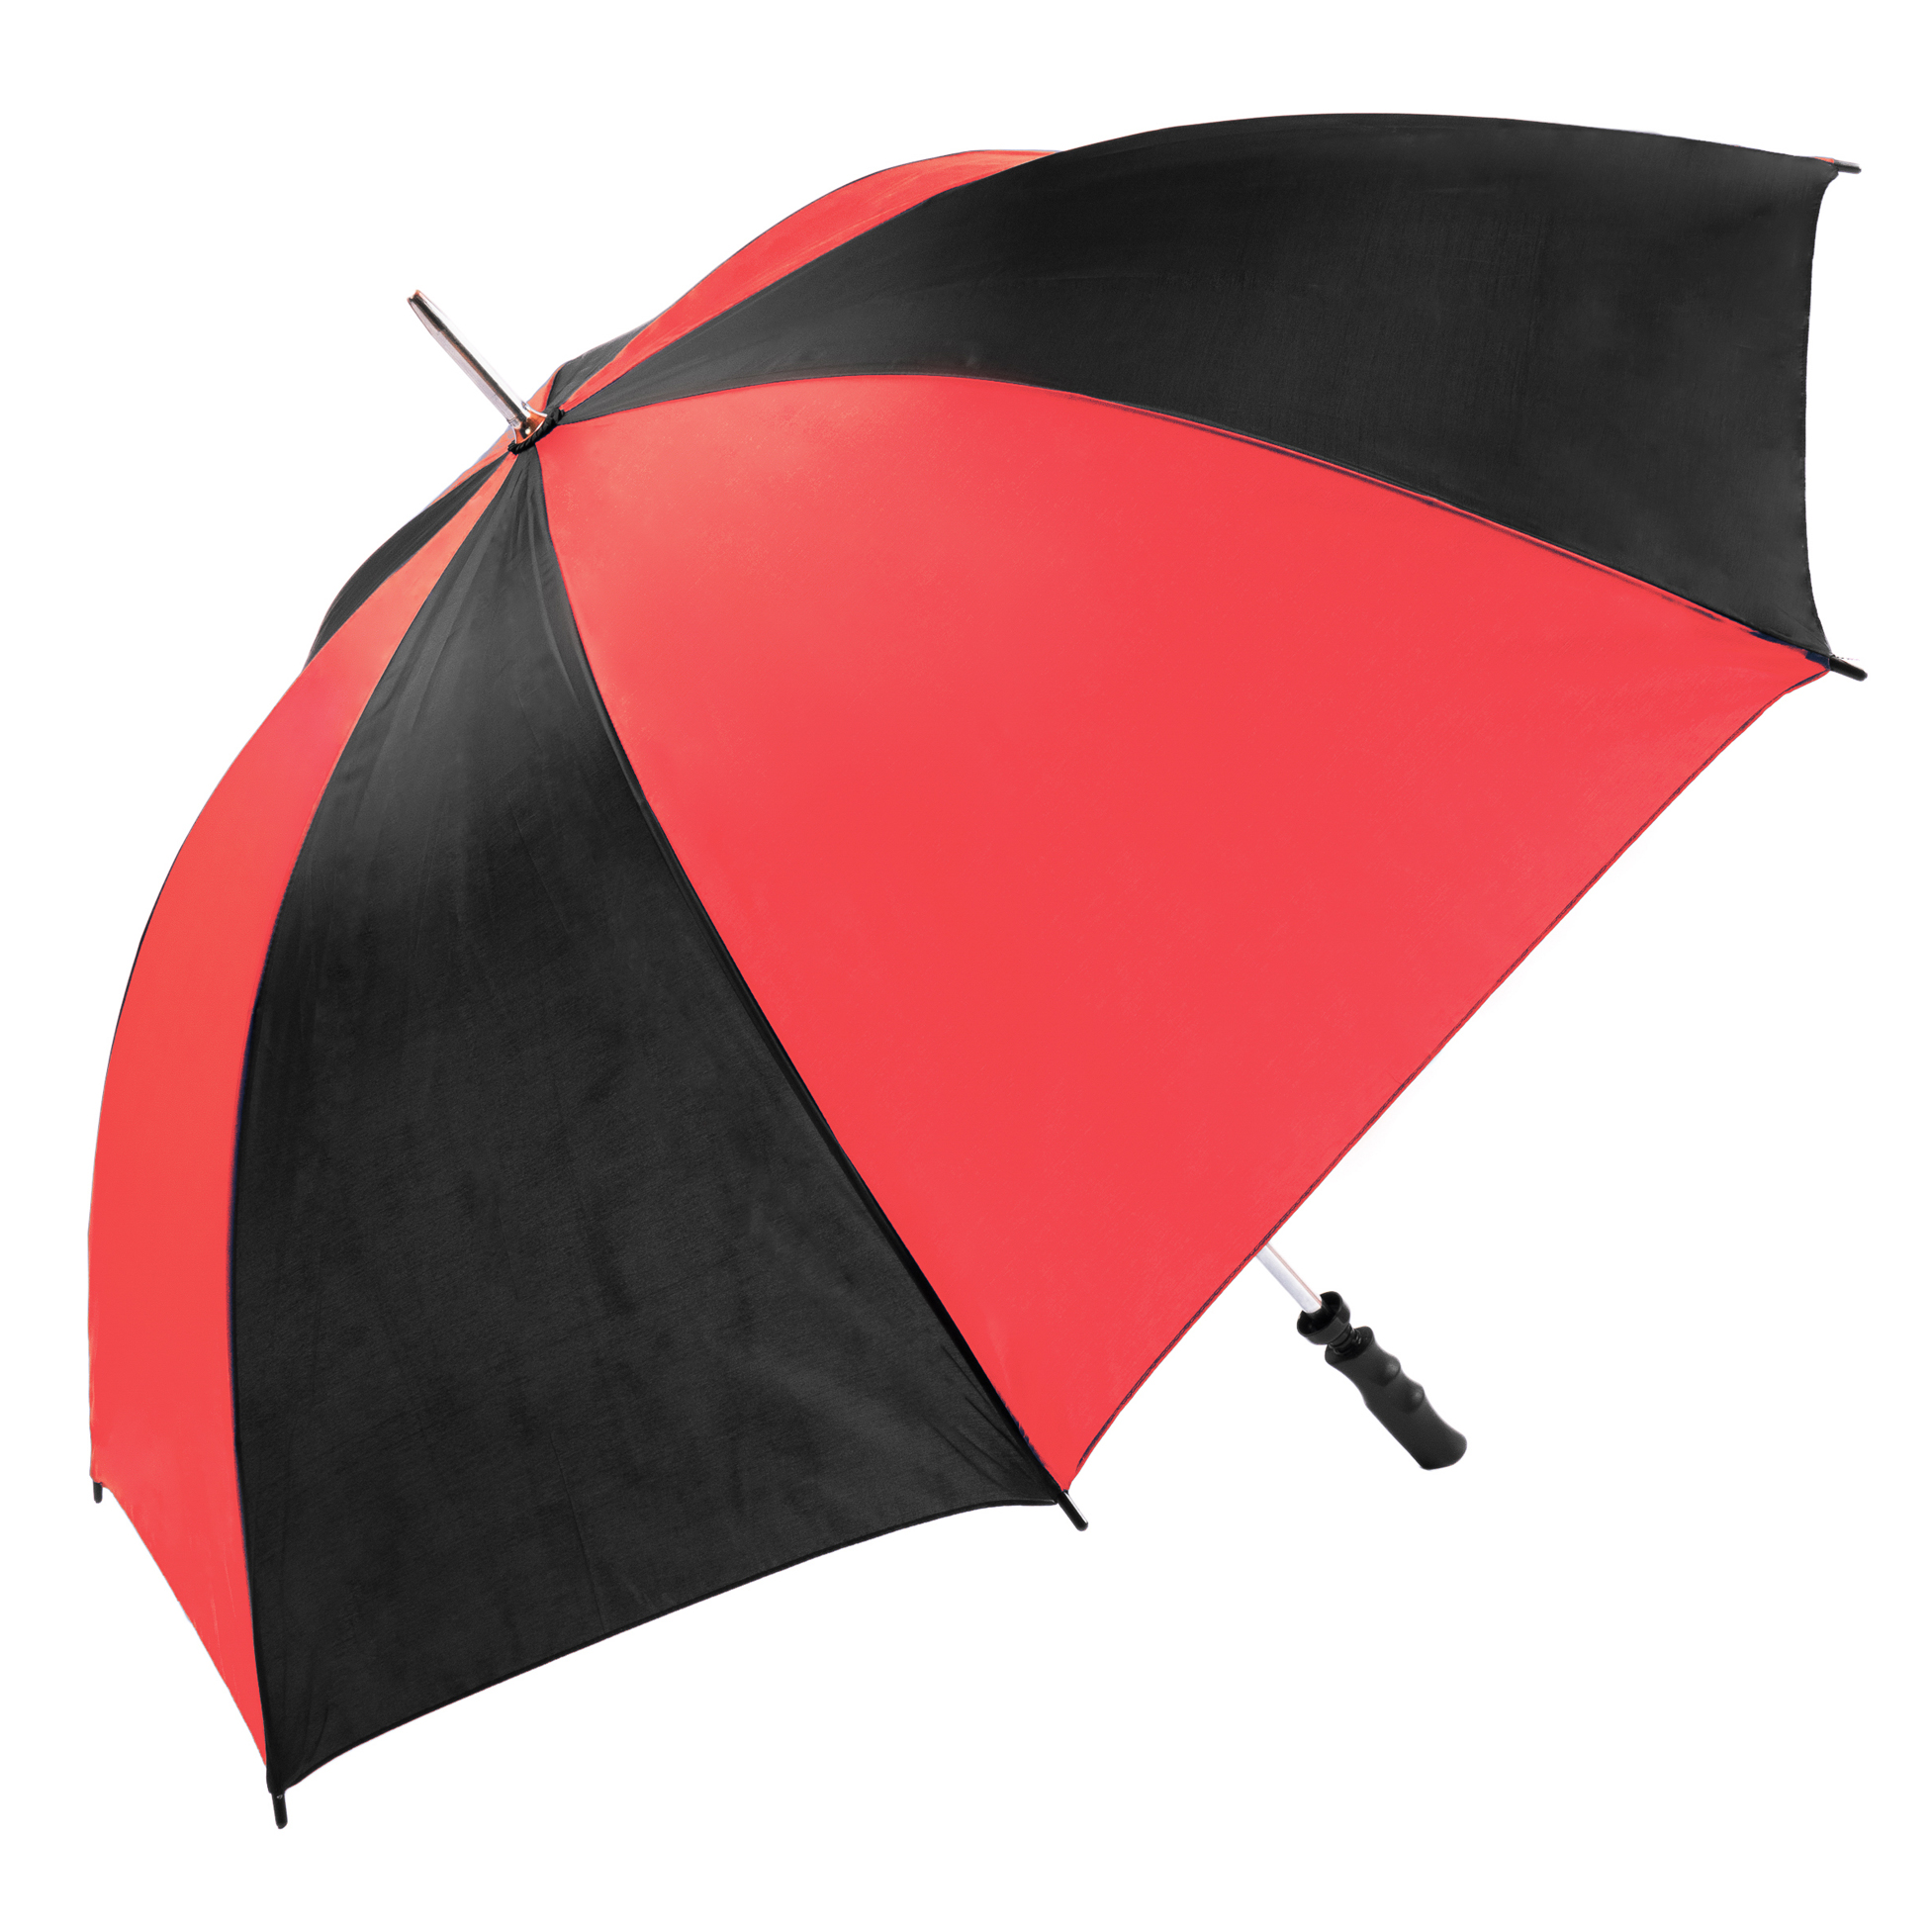 Red & Black Golf Umbrellas - 12 pack (13007-12)